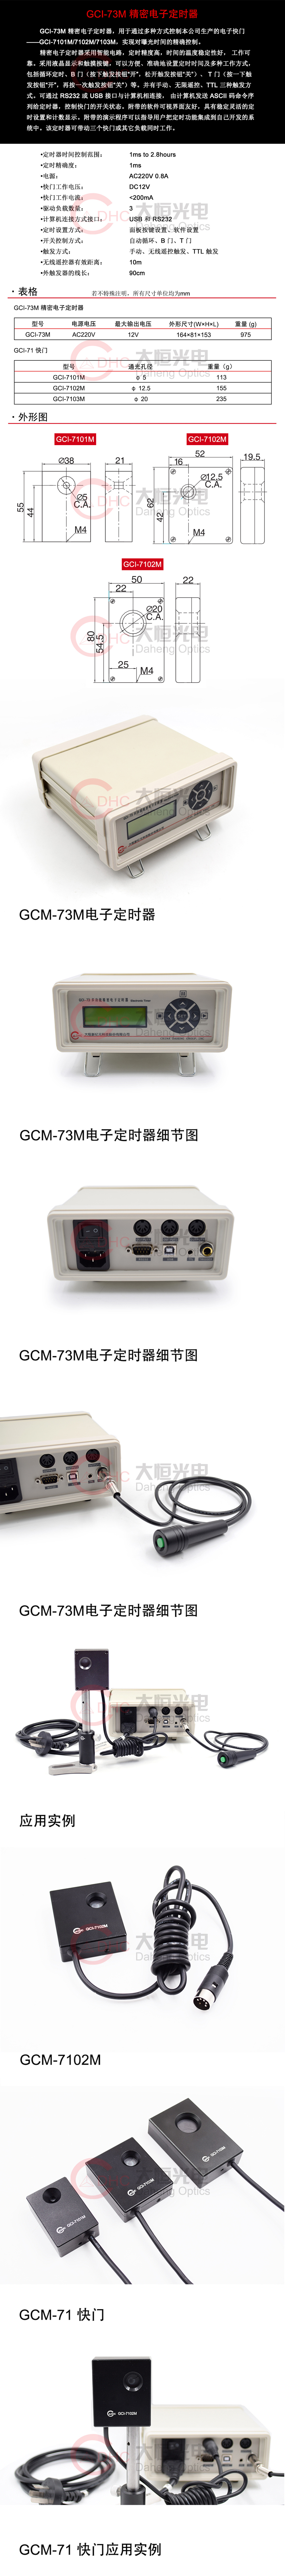 GCI-73M电子定时器及系列快门+水印.jpg